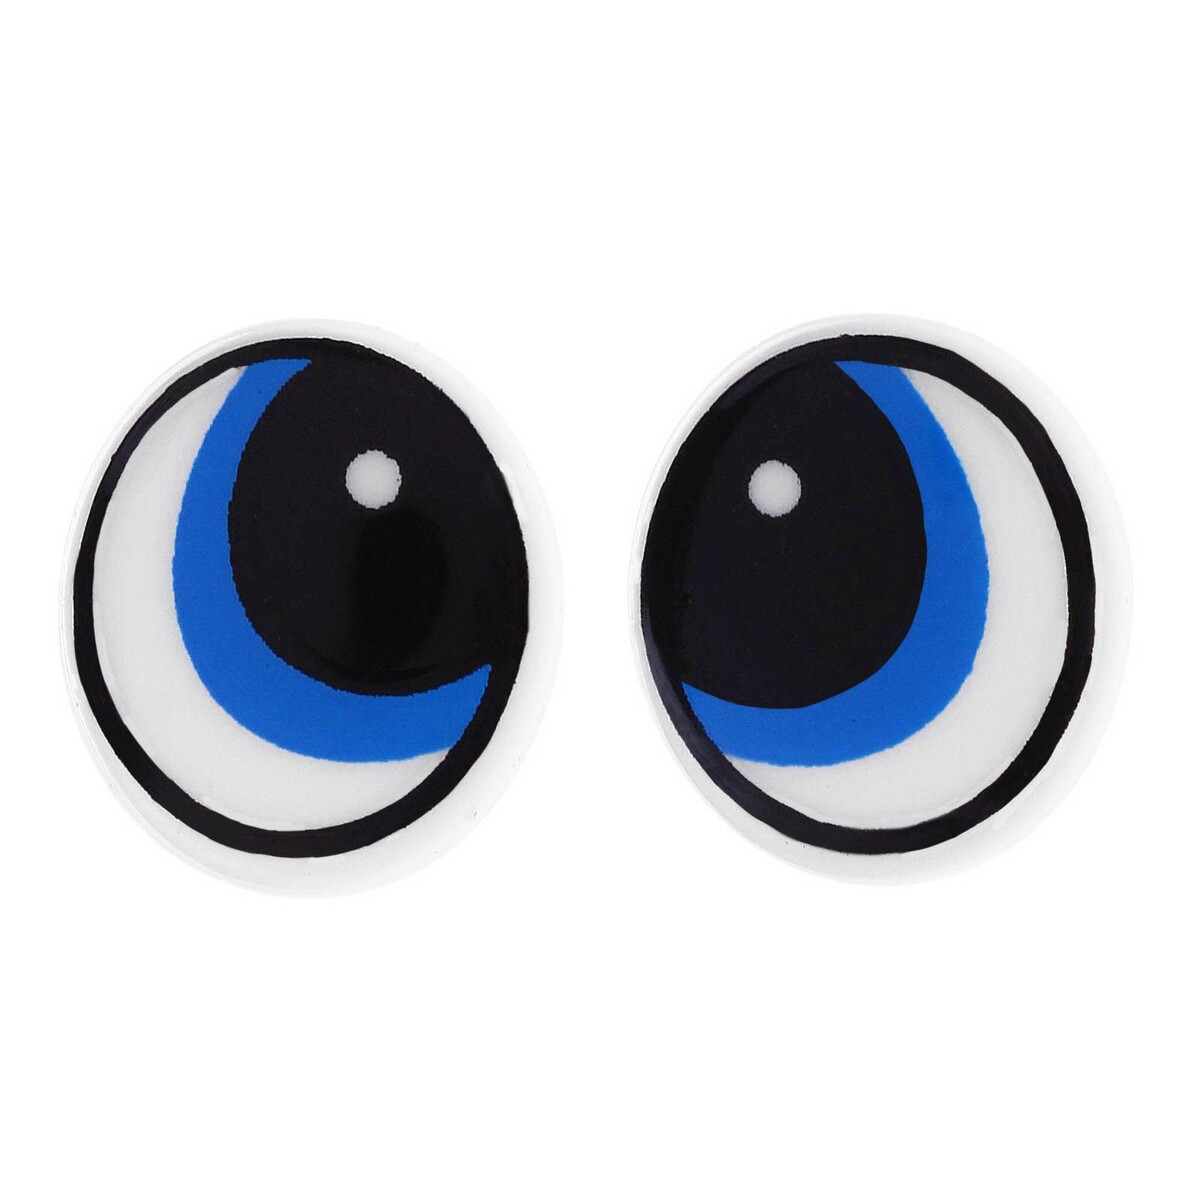 Глаза винтовые с заглушками, набор 4 шт, размер 1 шт: 1,7×1,5 см глаза винтовые с заглушками полупрозрачные набор 4 шт голубой размер 1 шт 1×1 см